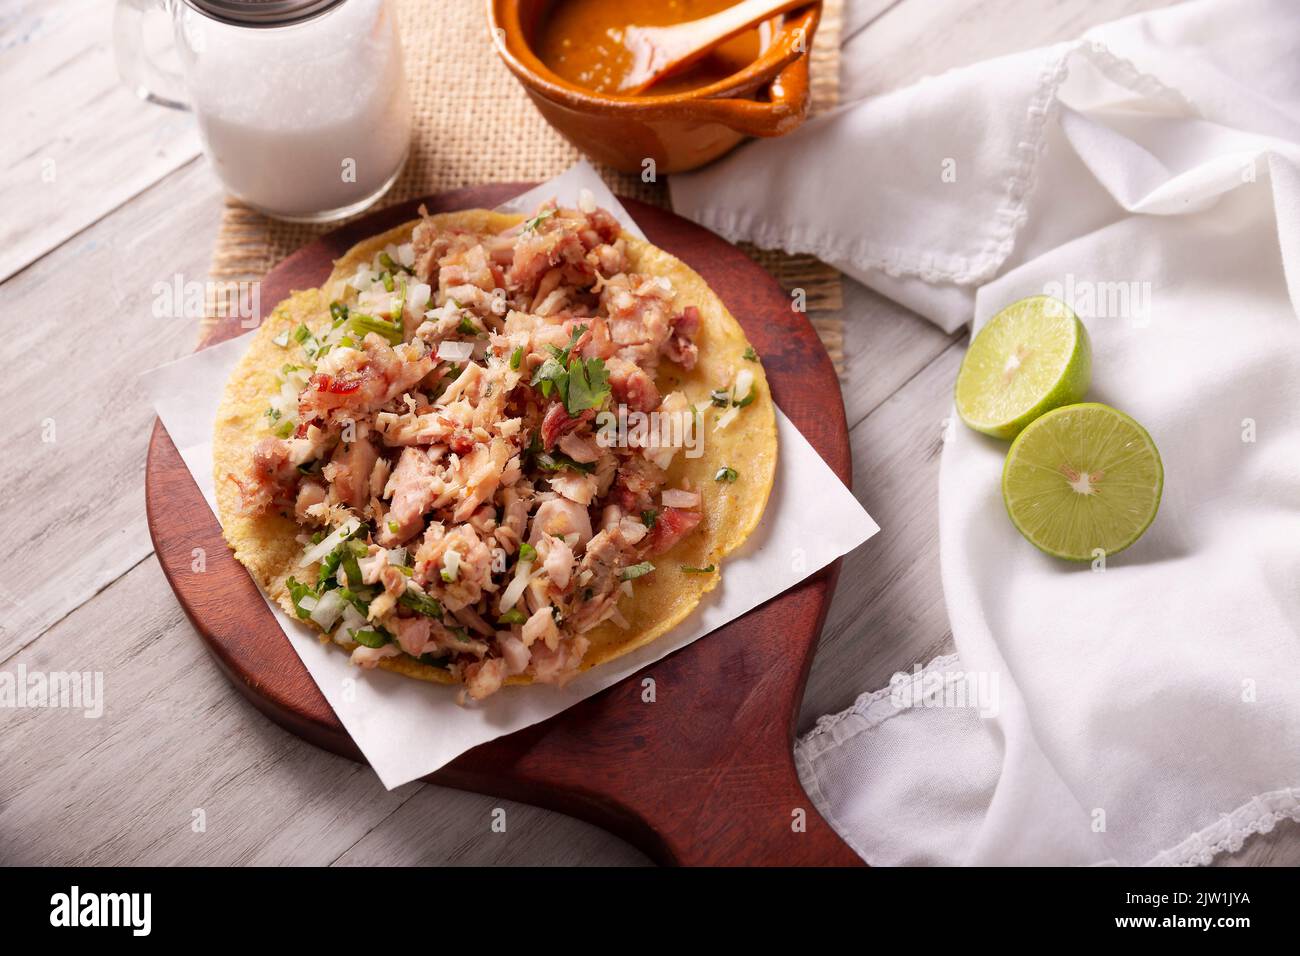 Taco de Carnitas. Maismehl-Tortilla mit frittiertem Schweinefleisch. Traditionelle mexikanische Vorspeise, begleitet von Koriander, Zwiebel und heißer Sauce. Stockfoto